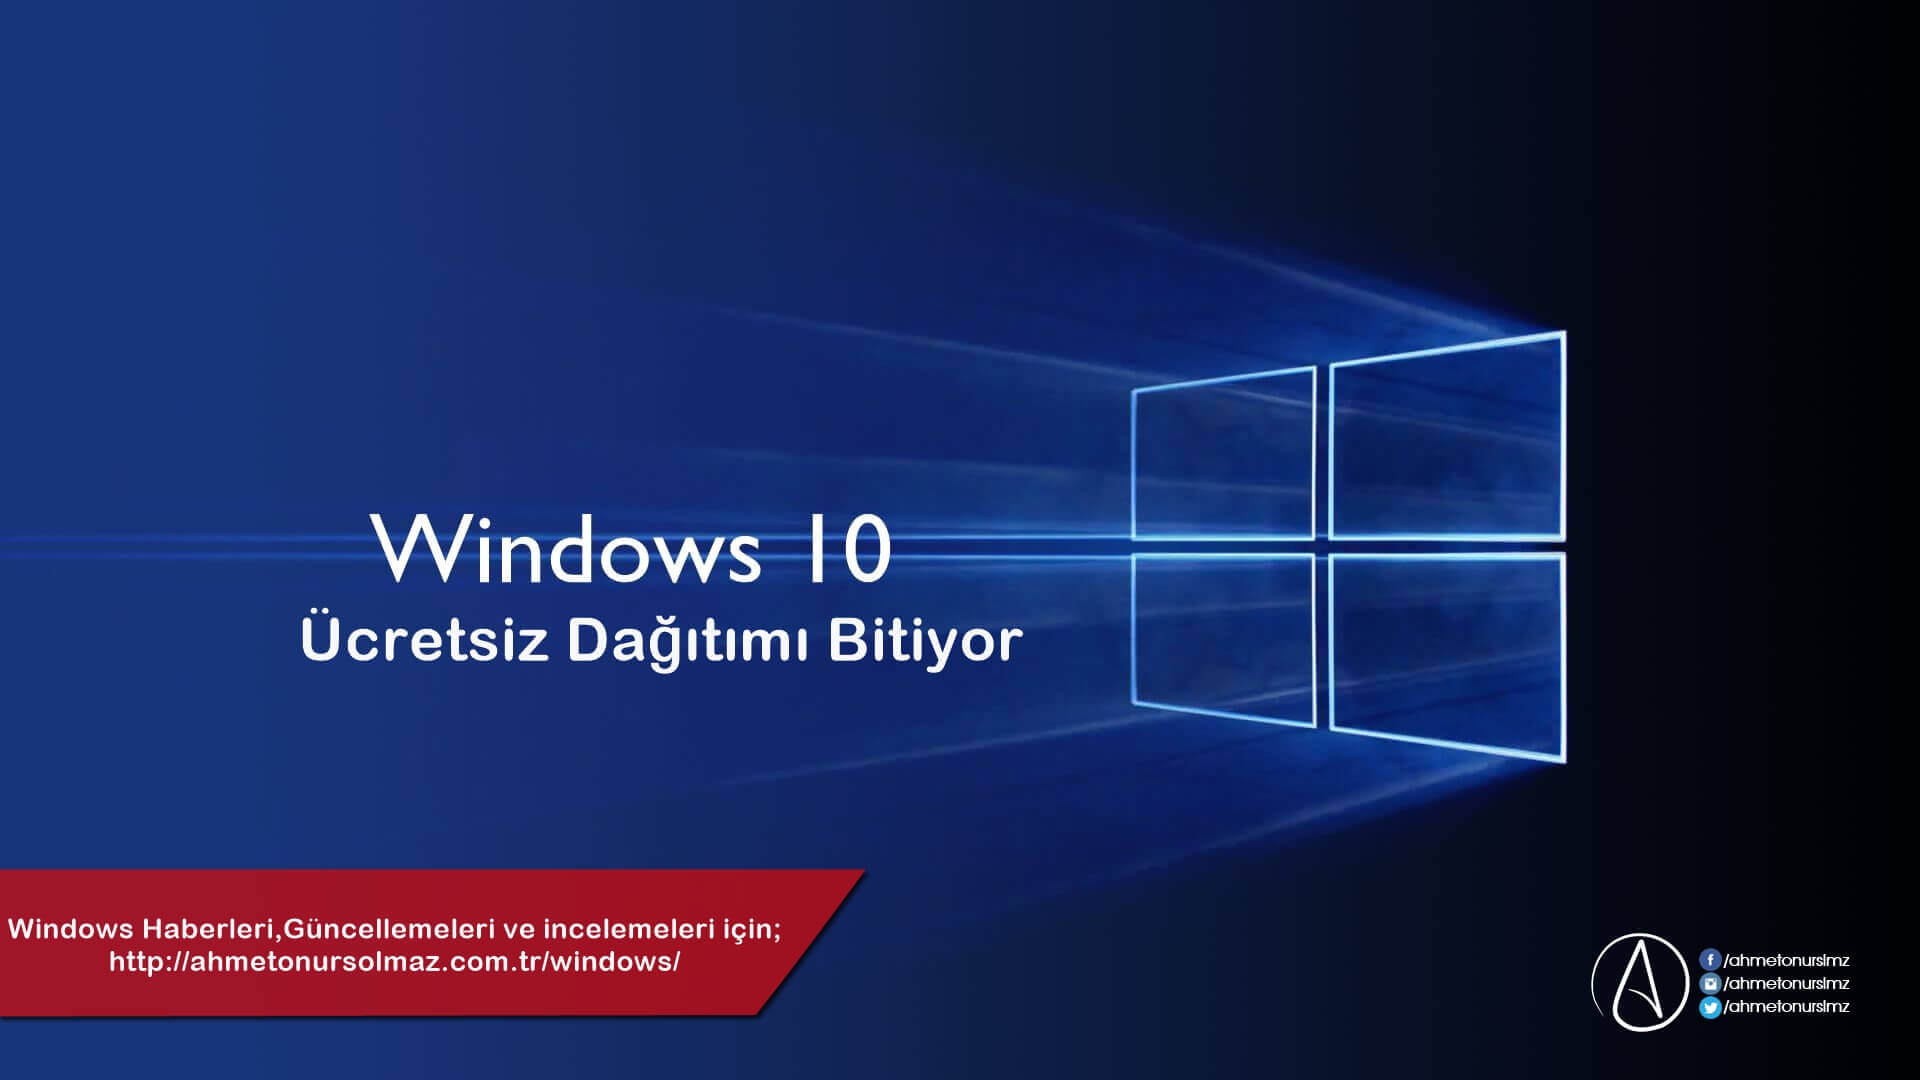 Windows 10 Ücretsiz Dağıtımı Bitiyor